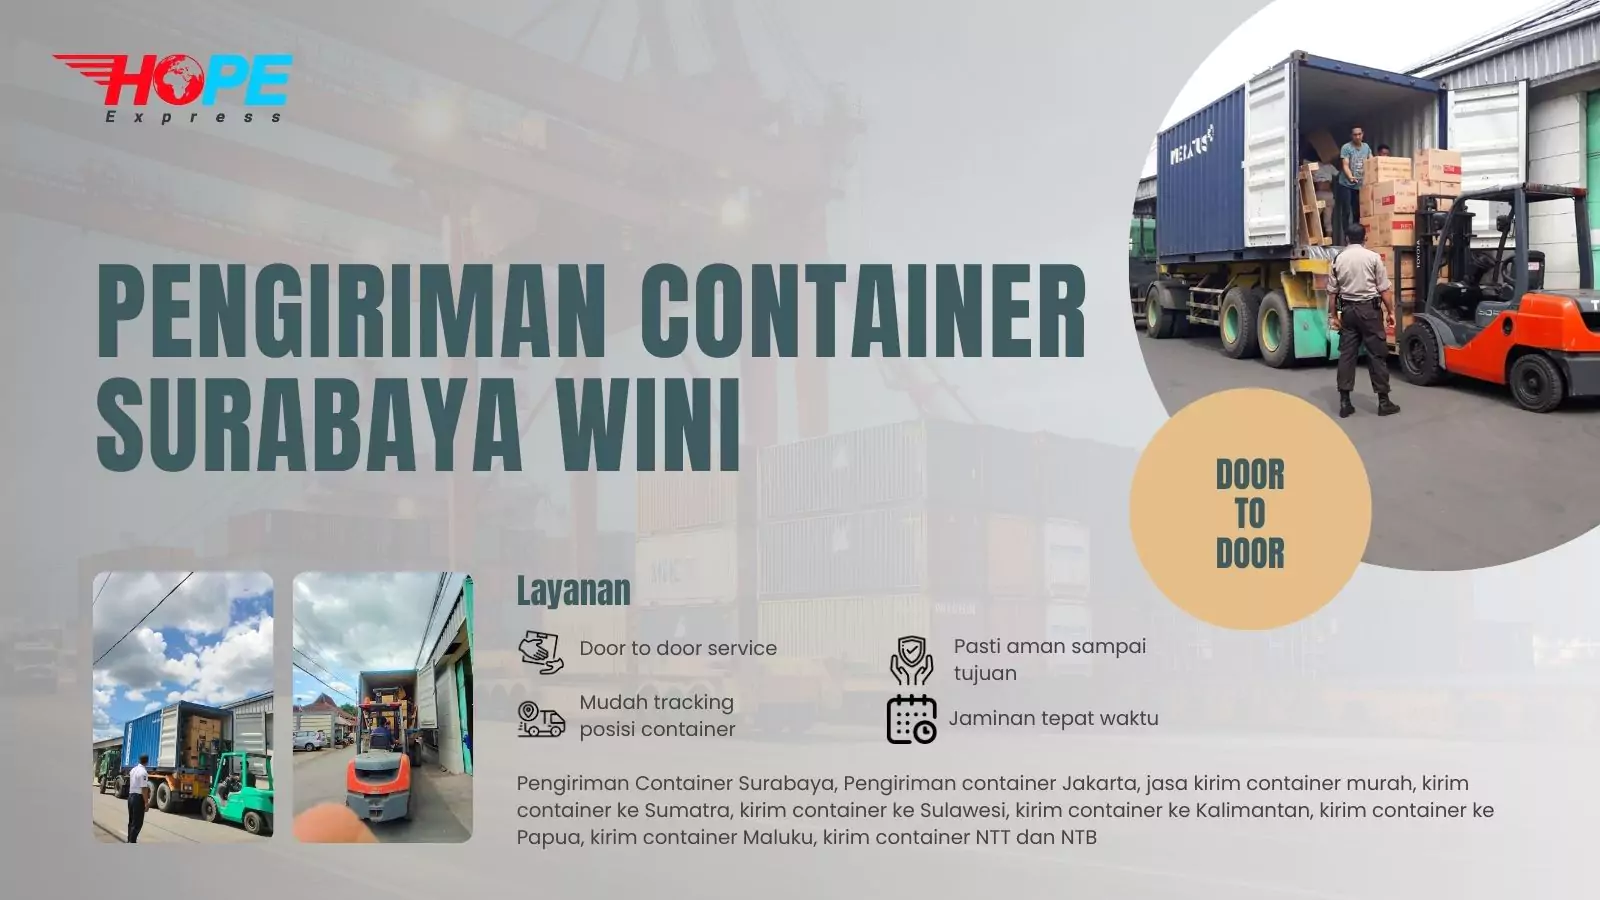 Pengiriman Container Surabaya Wini